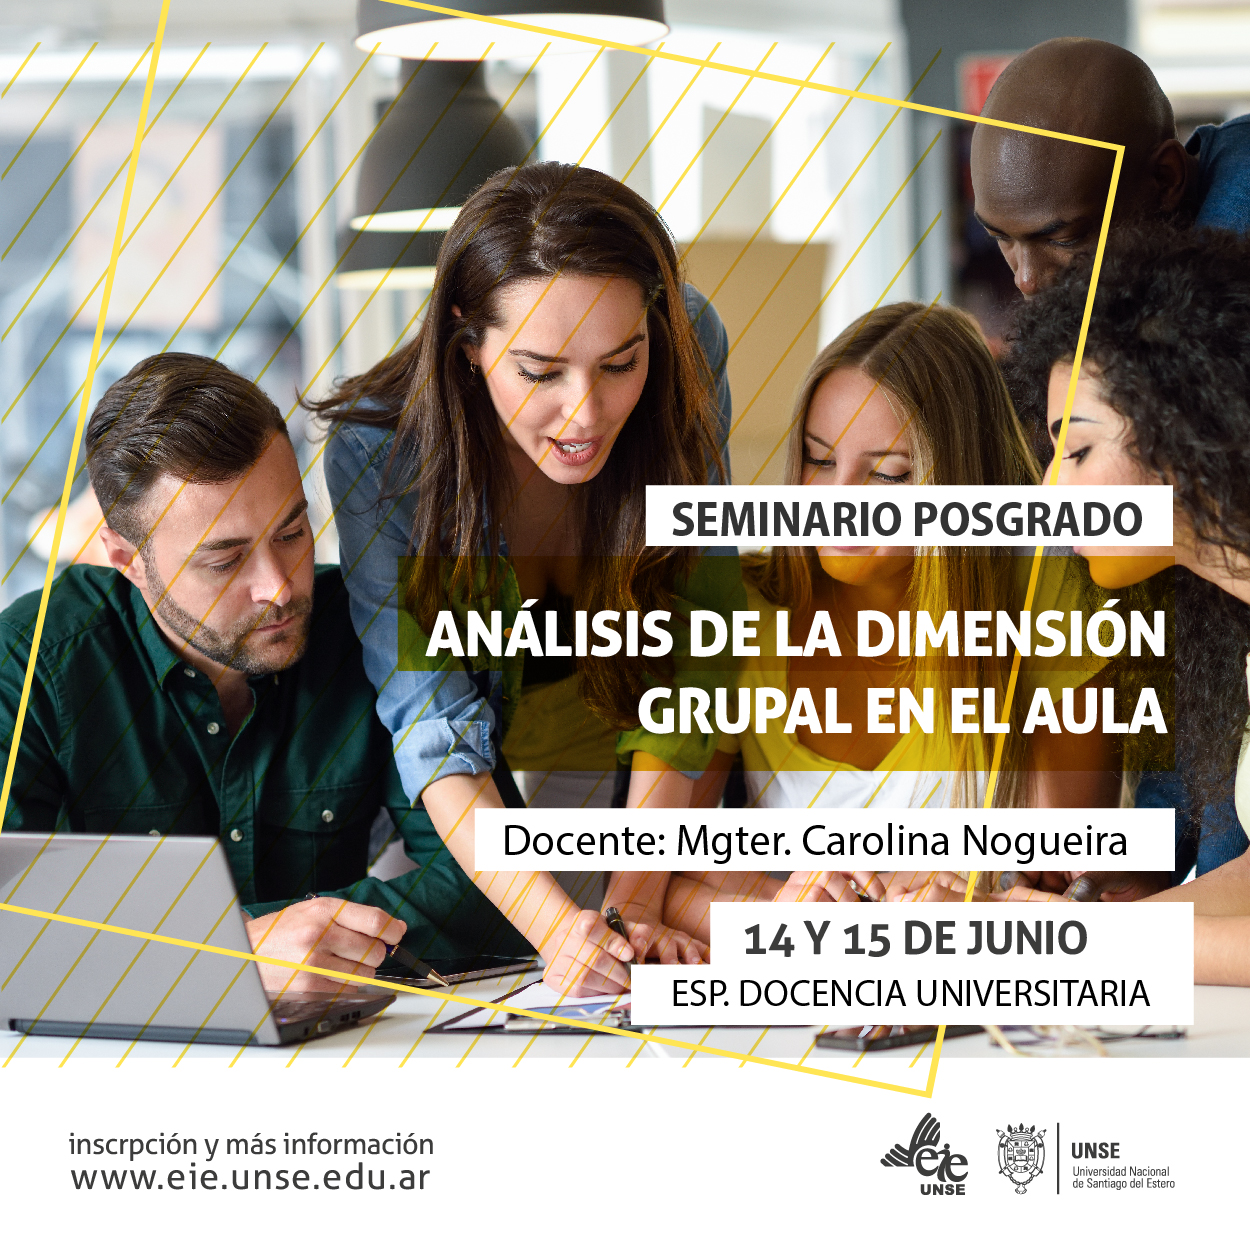 Inscriben al seminario «Análisis de la dimensión grupal en el aula»